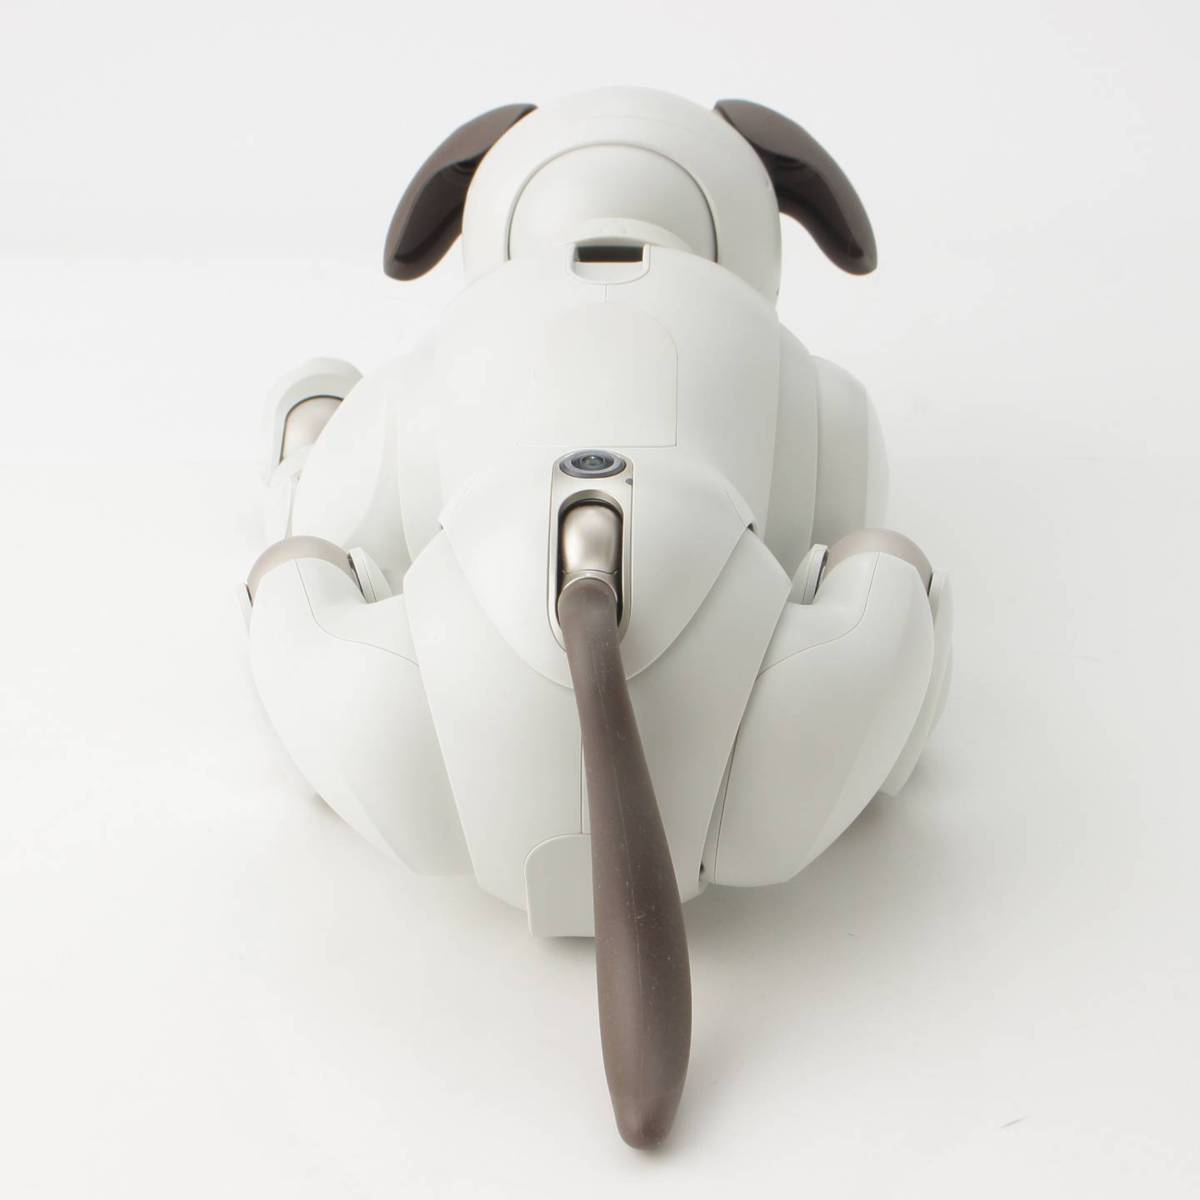 SONY アイボ aibo ERS-1000 ペット 犬型 ホワイト 171628 バーチャル